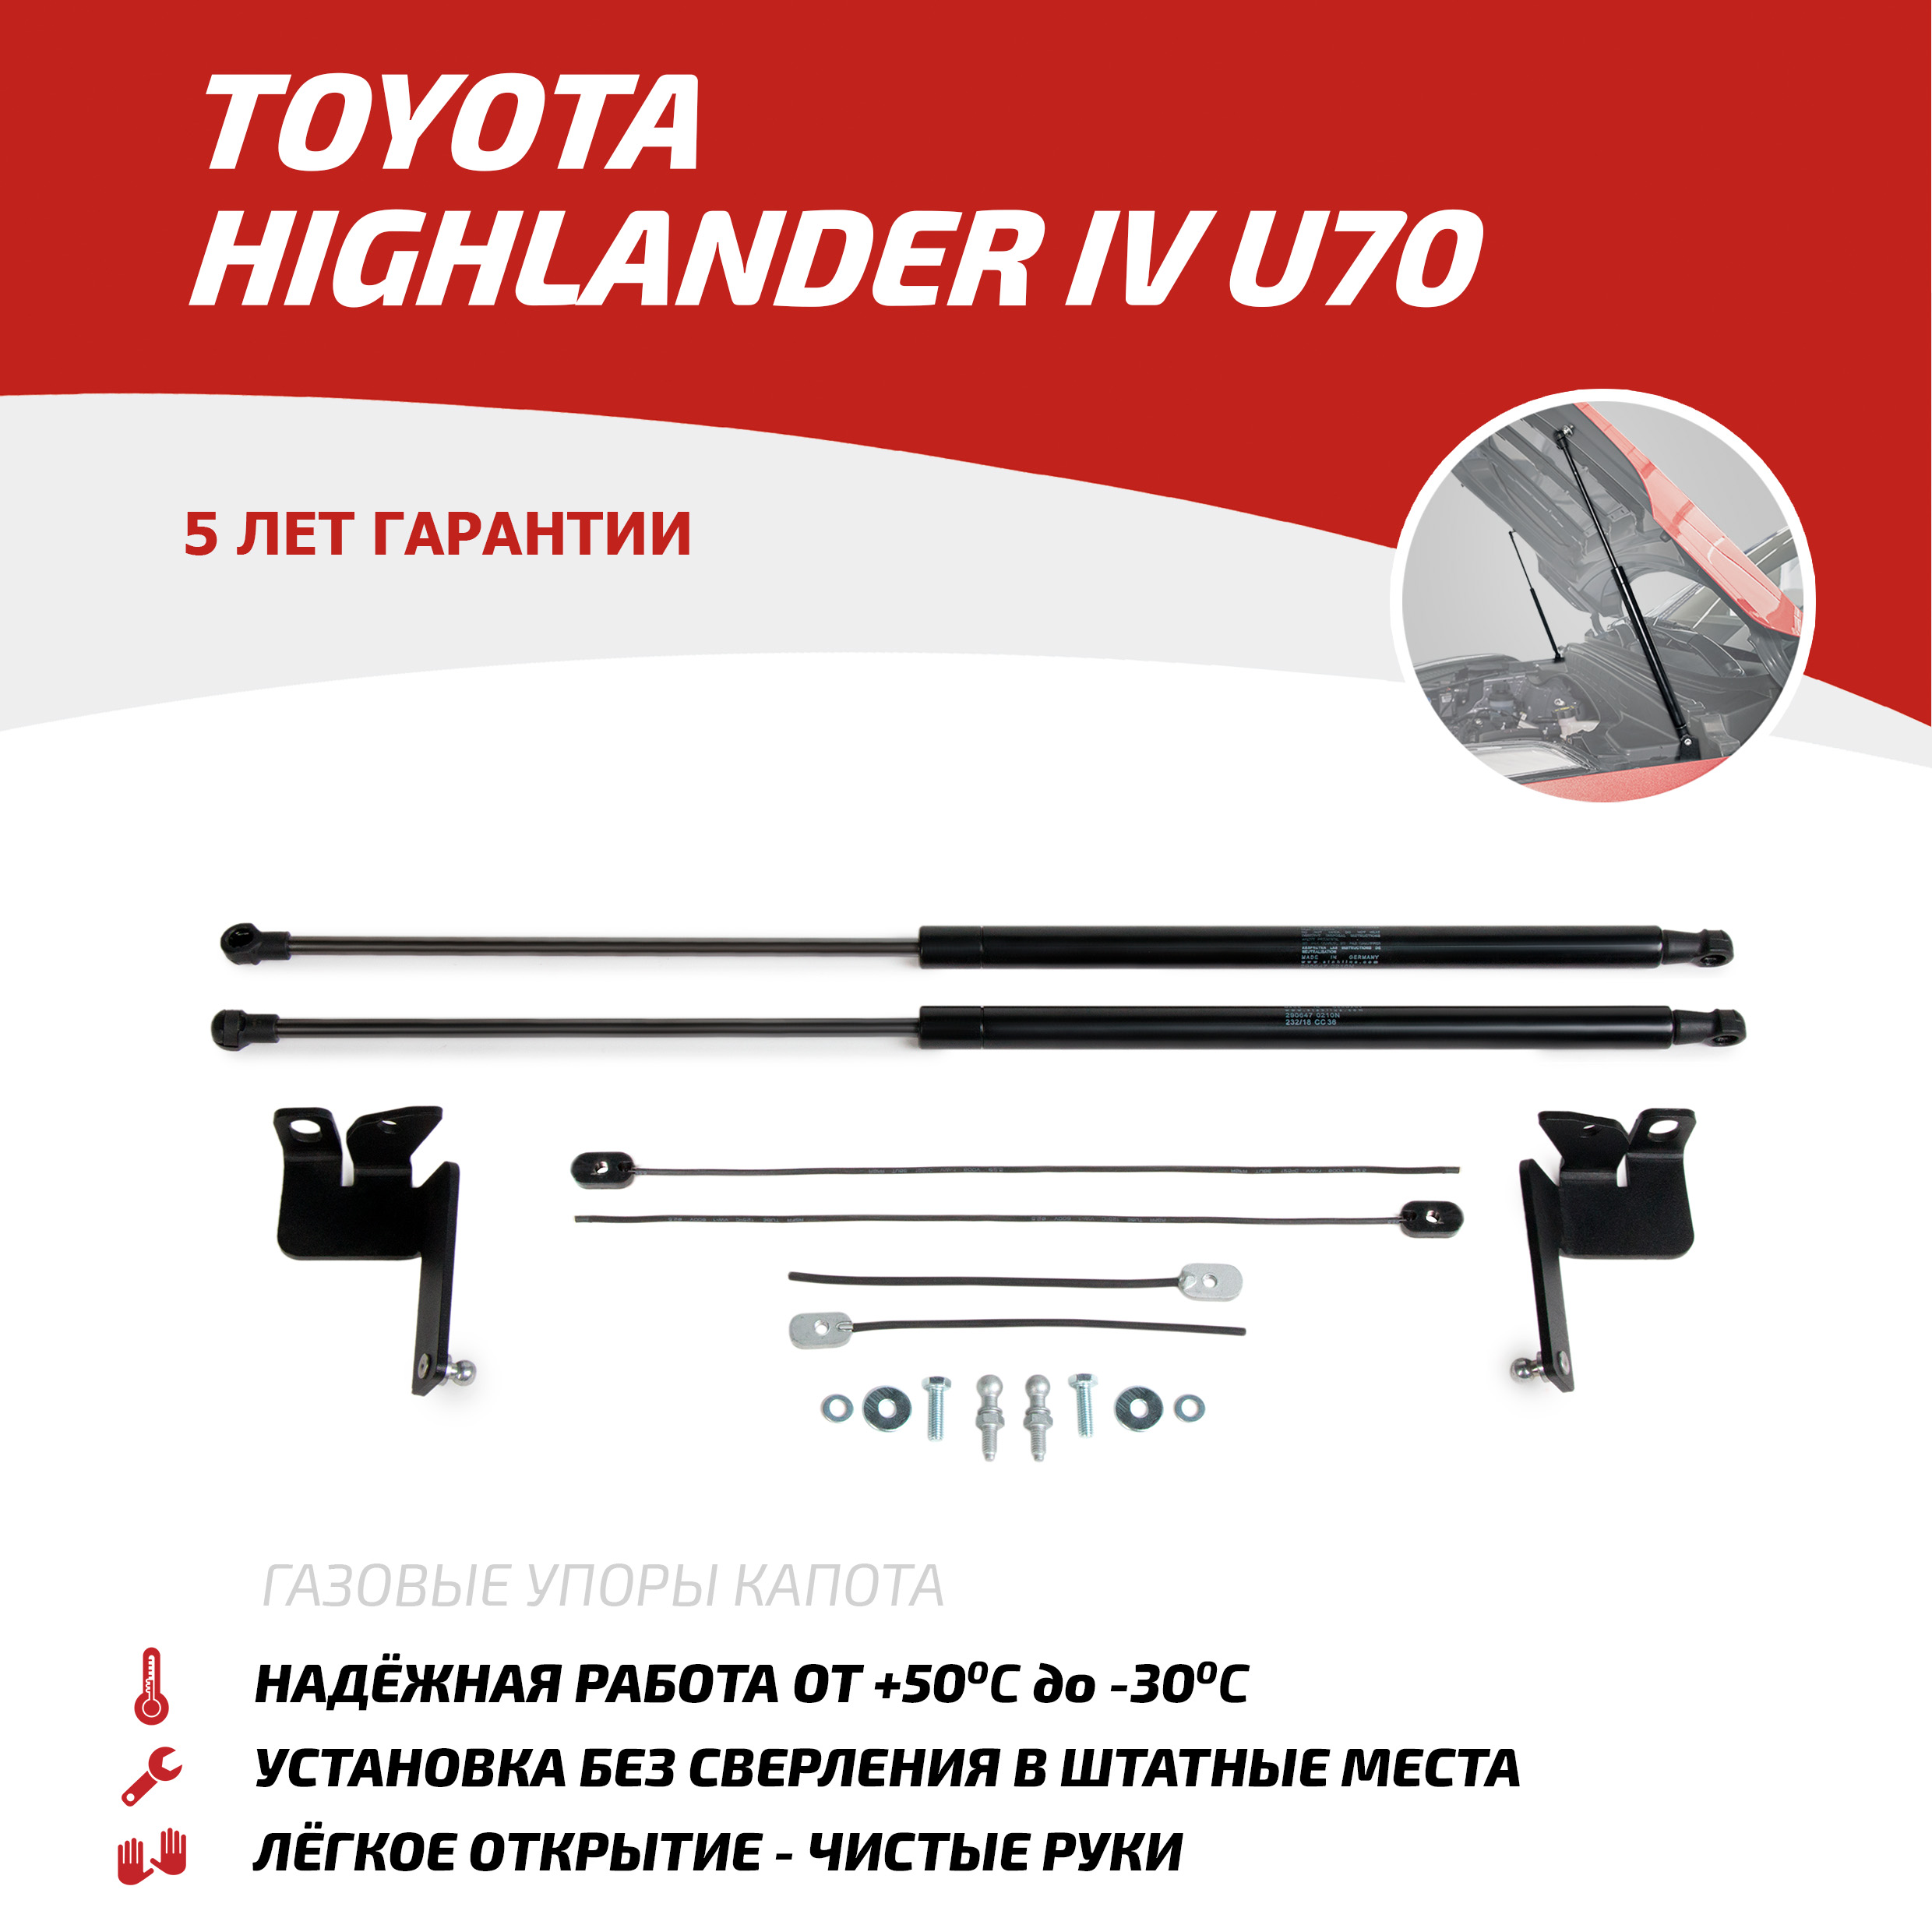 Газовые упоры капота АвтоУпор Toyota Highlander IV U70 поколение 2020-, 2 шт., UTOHIG021